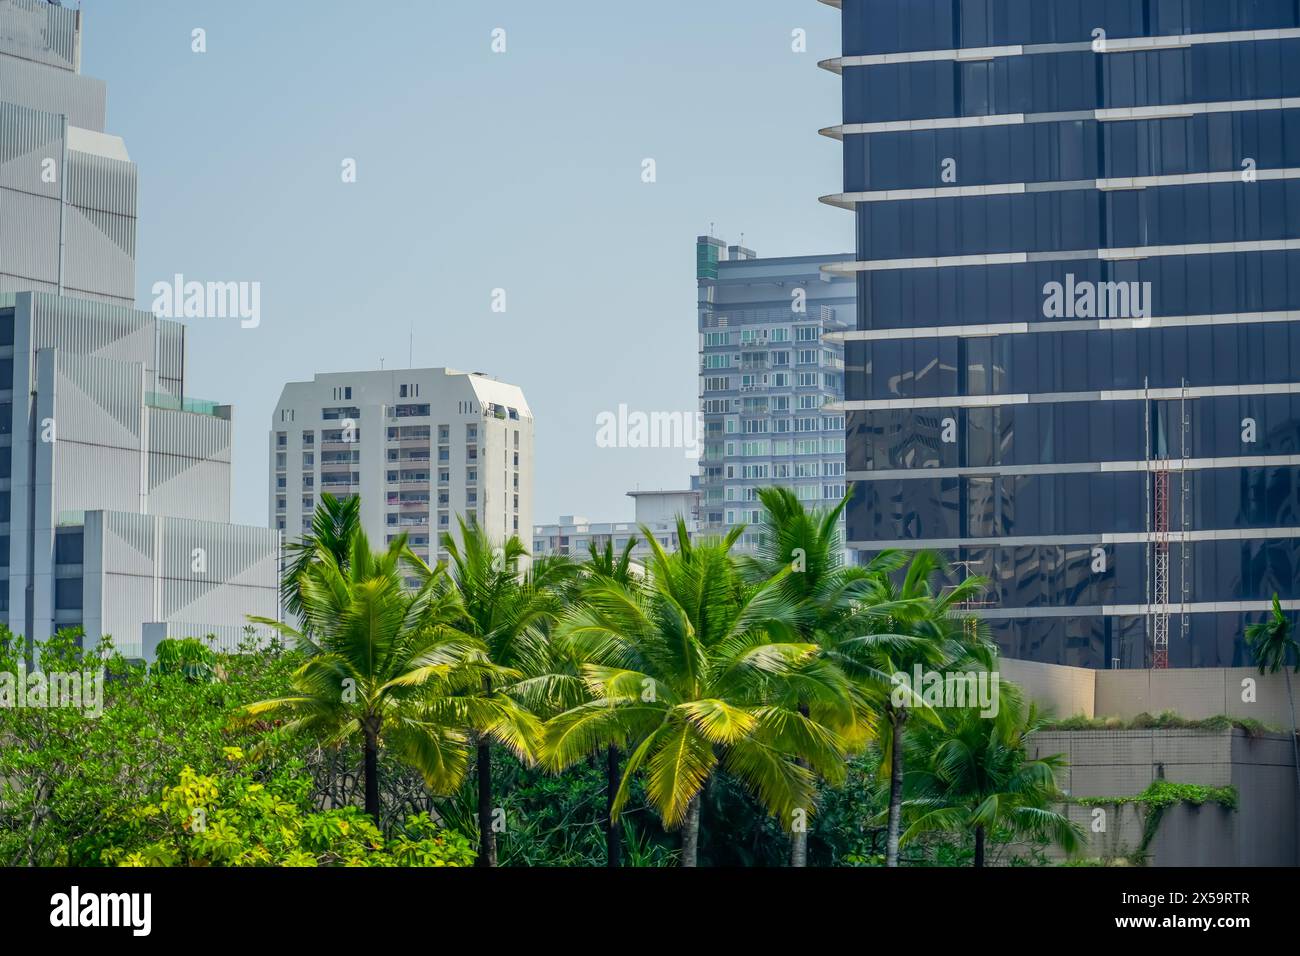 Jardins tropicaux et palmiers et plantes exotiques sur les toits des gratte-ciel dans la métropole des vérandas et terrasses. Banque D'Images